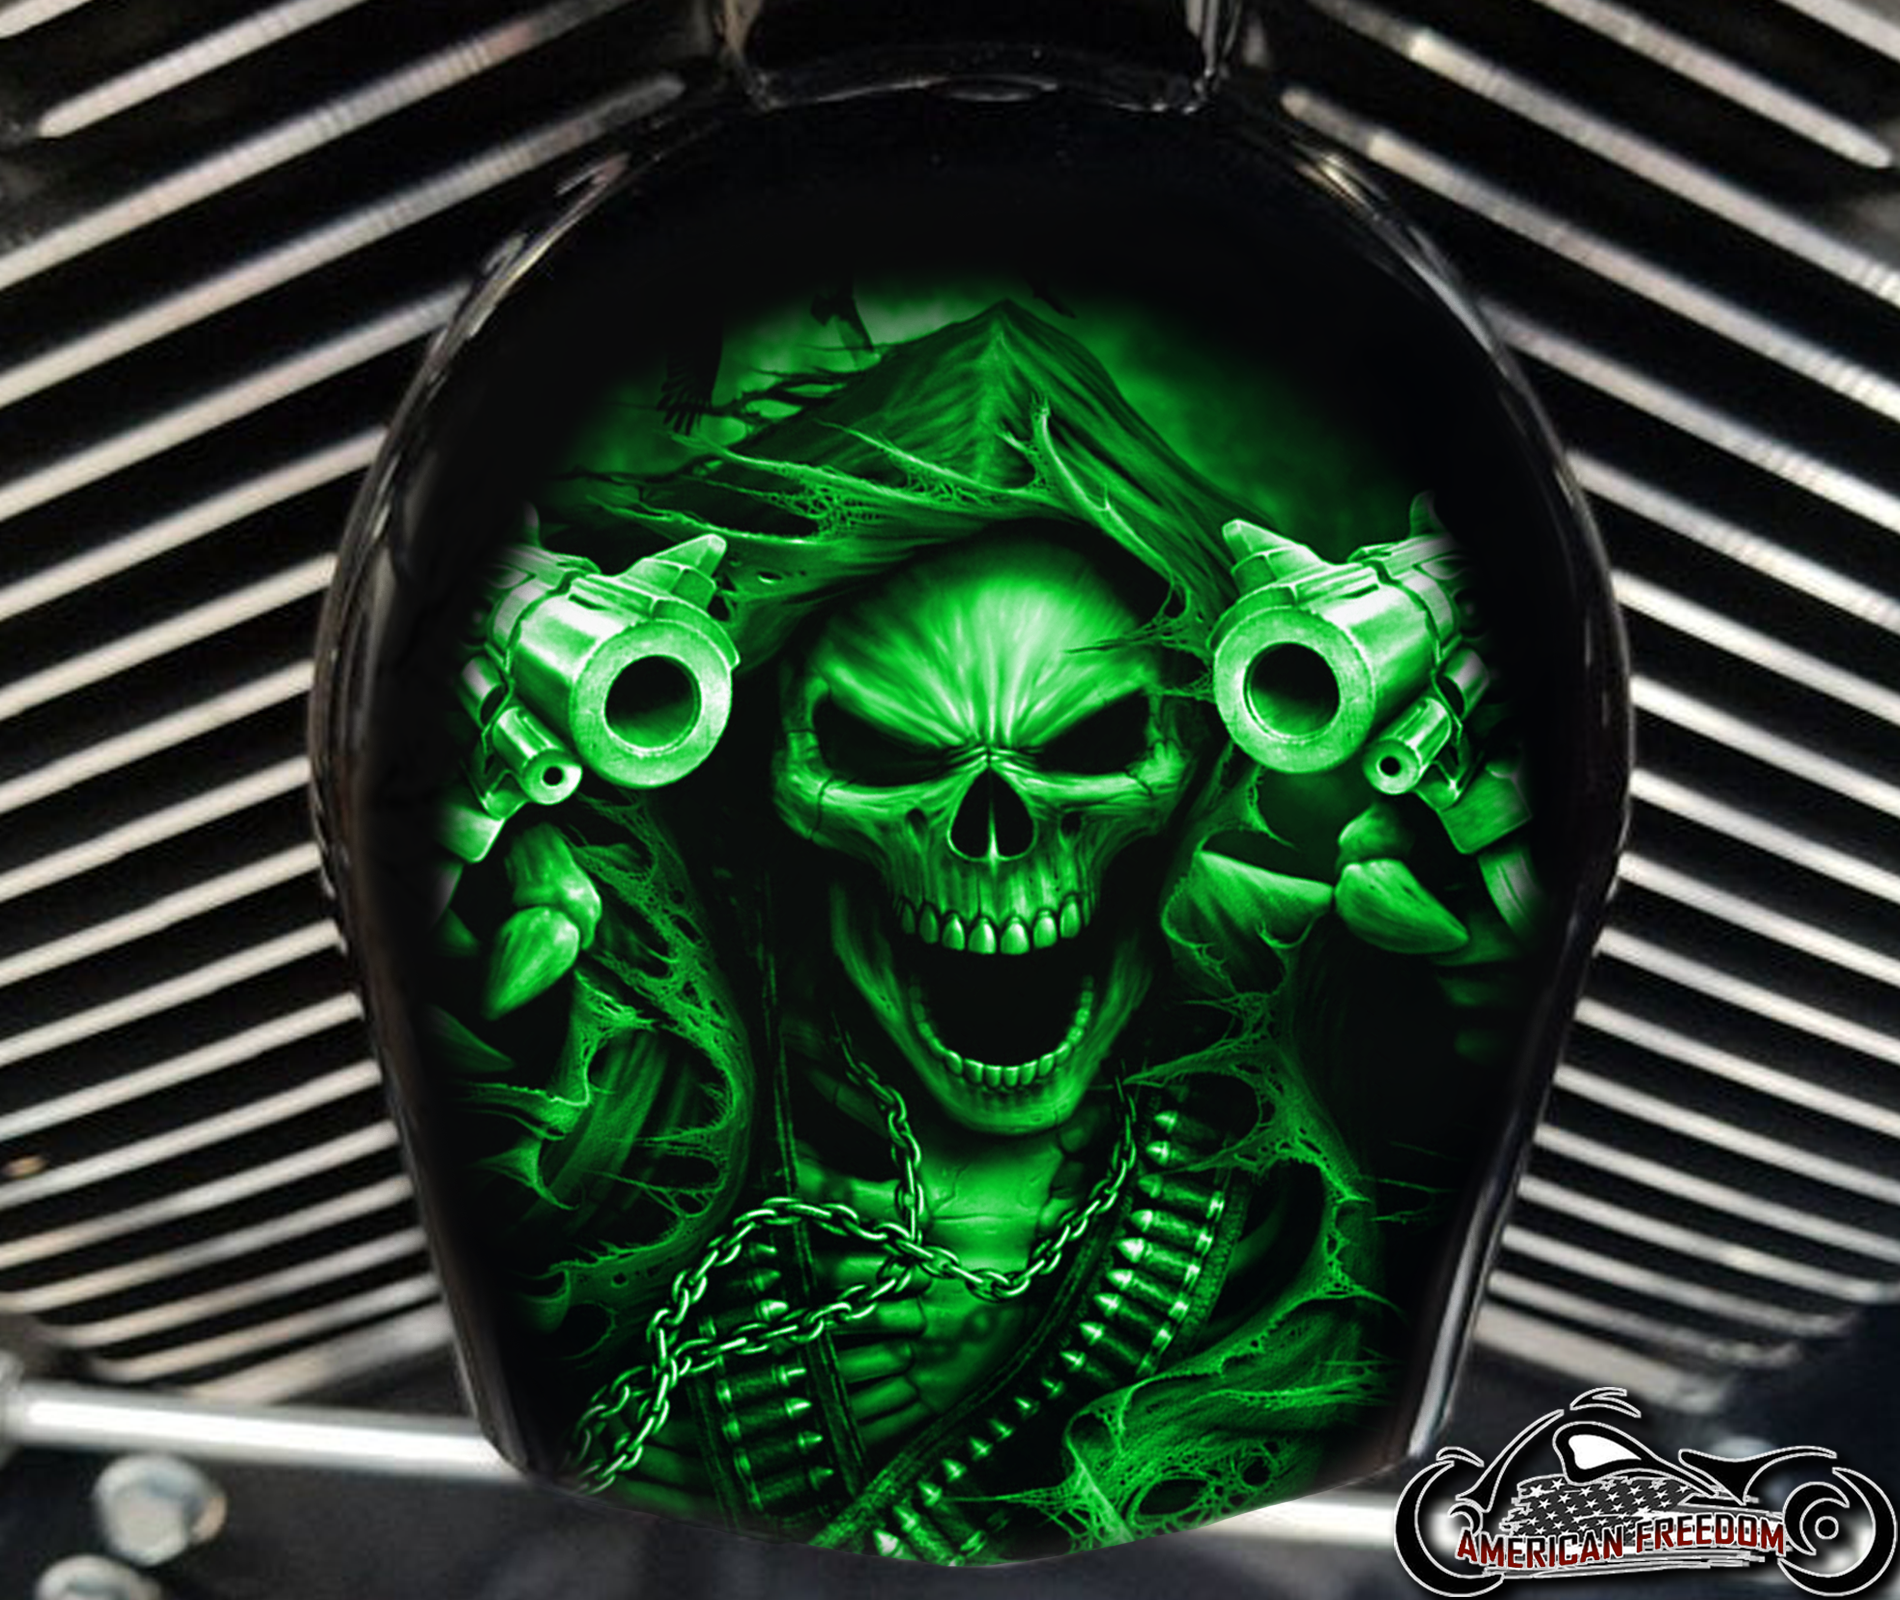 Custom Horn Cover - Gunfighter Reaper green